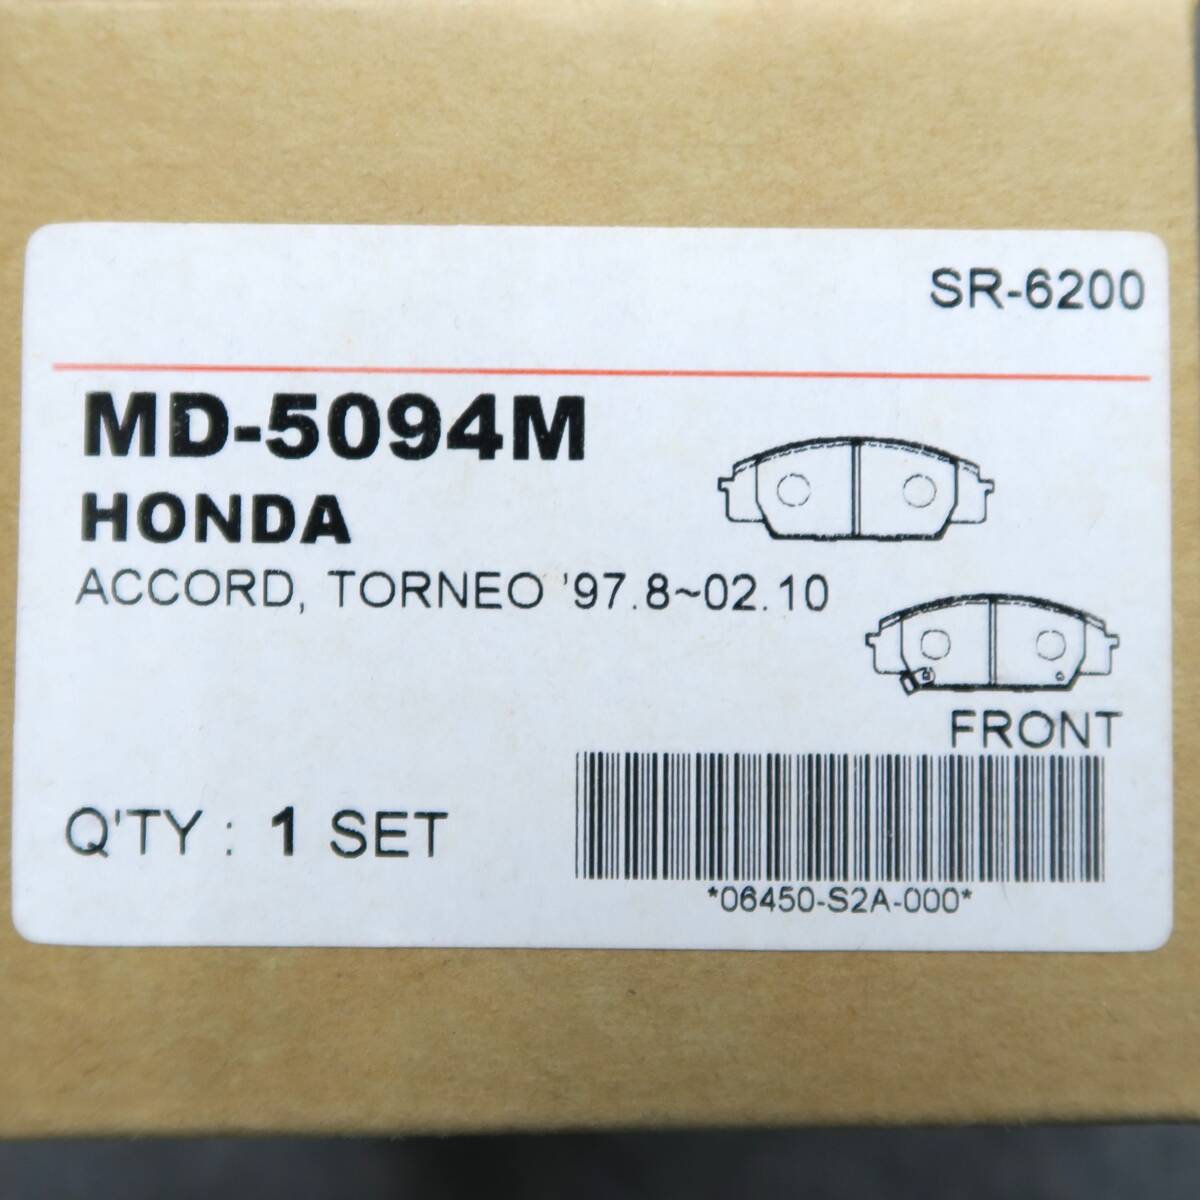 2 коробка Accord Torneo передний тормозные накладки MD-5094M SR-6200 06450-S2A-000 INTIMA Inte .ma старый машина экспорт не использовался бесплатная доставка 